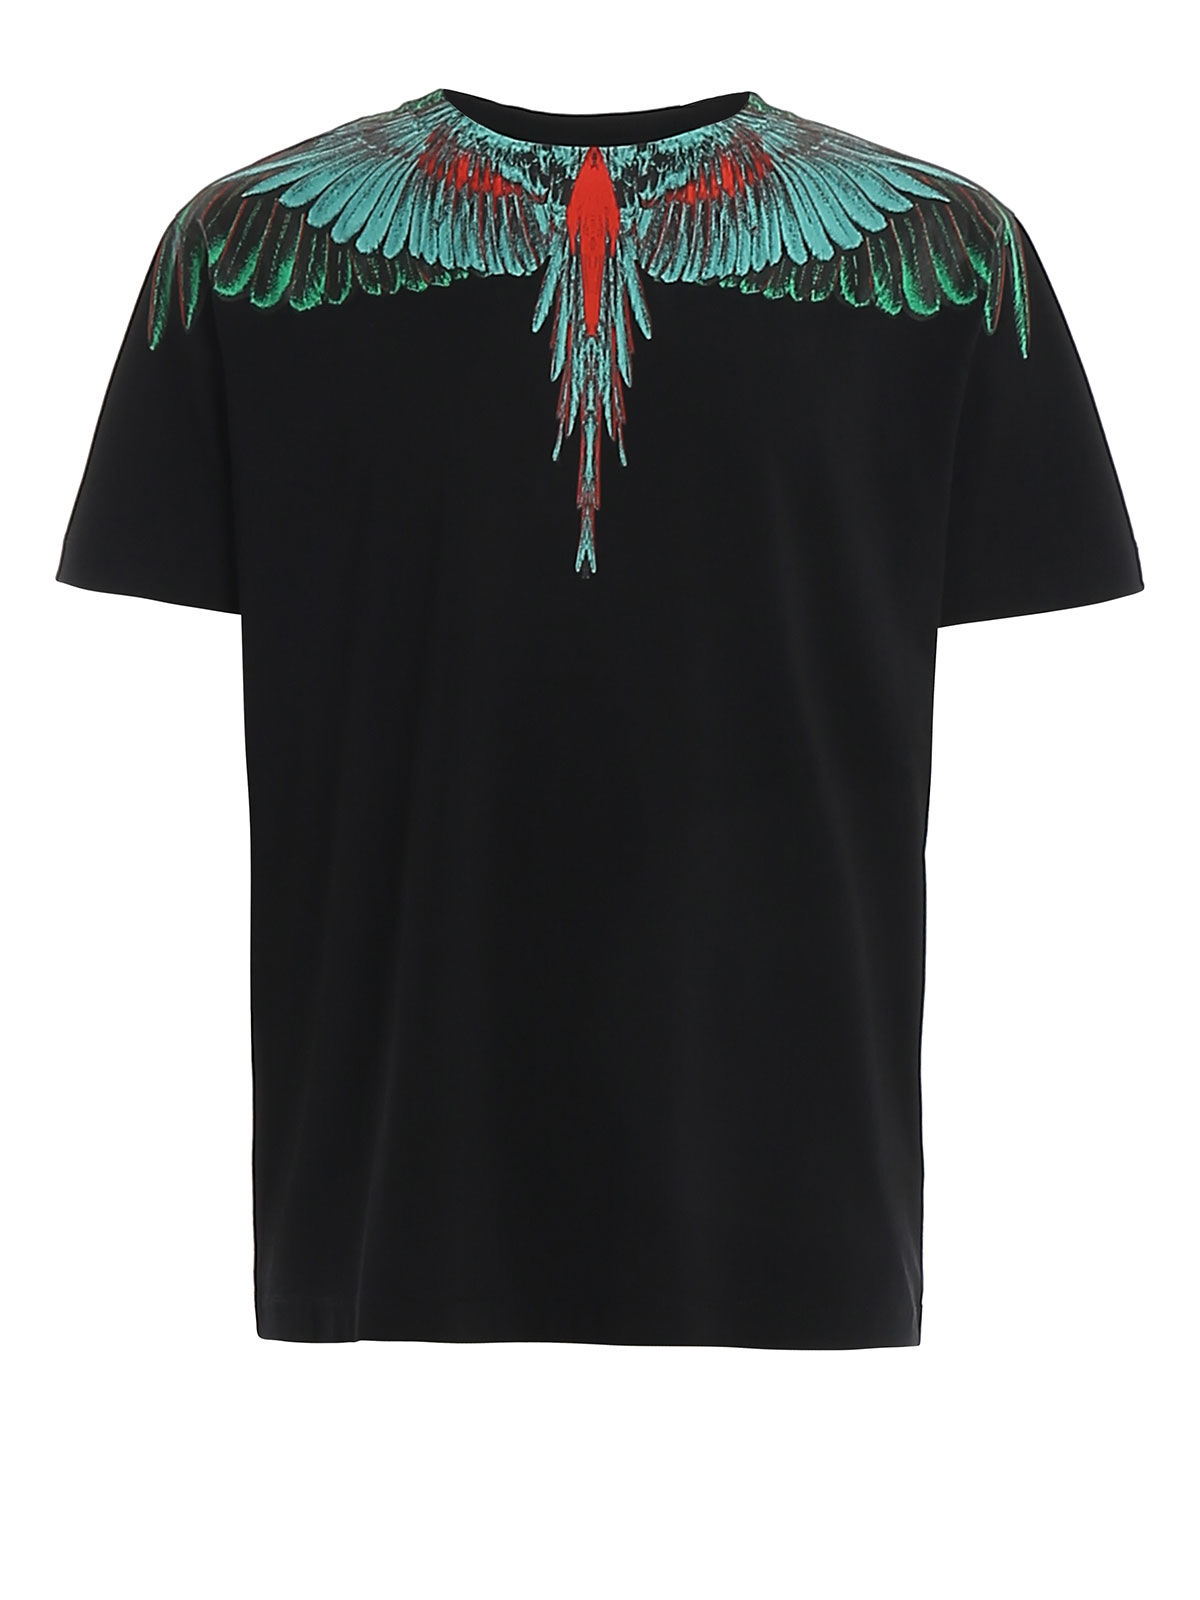 Marcelo Burlon T Shirt : Marcelo Burlon T Shirts Men Indian Wings Snake Marcelo Burlon T Shirt